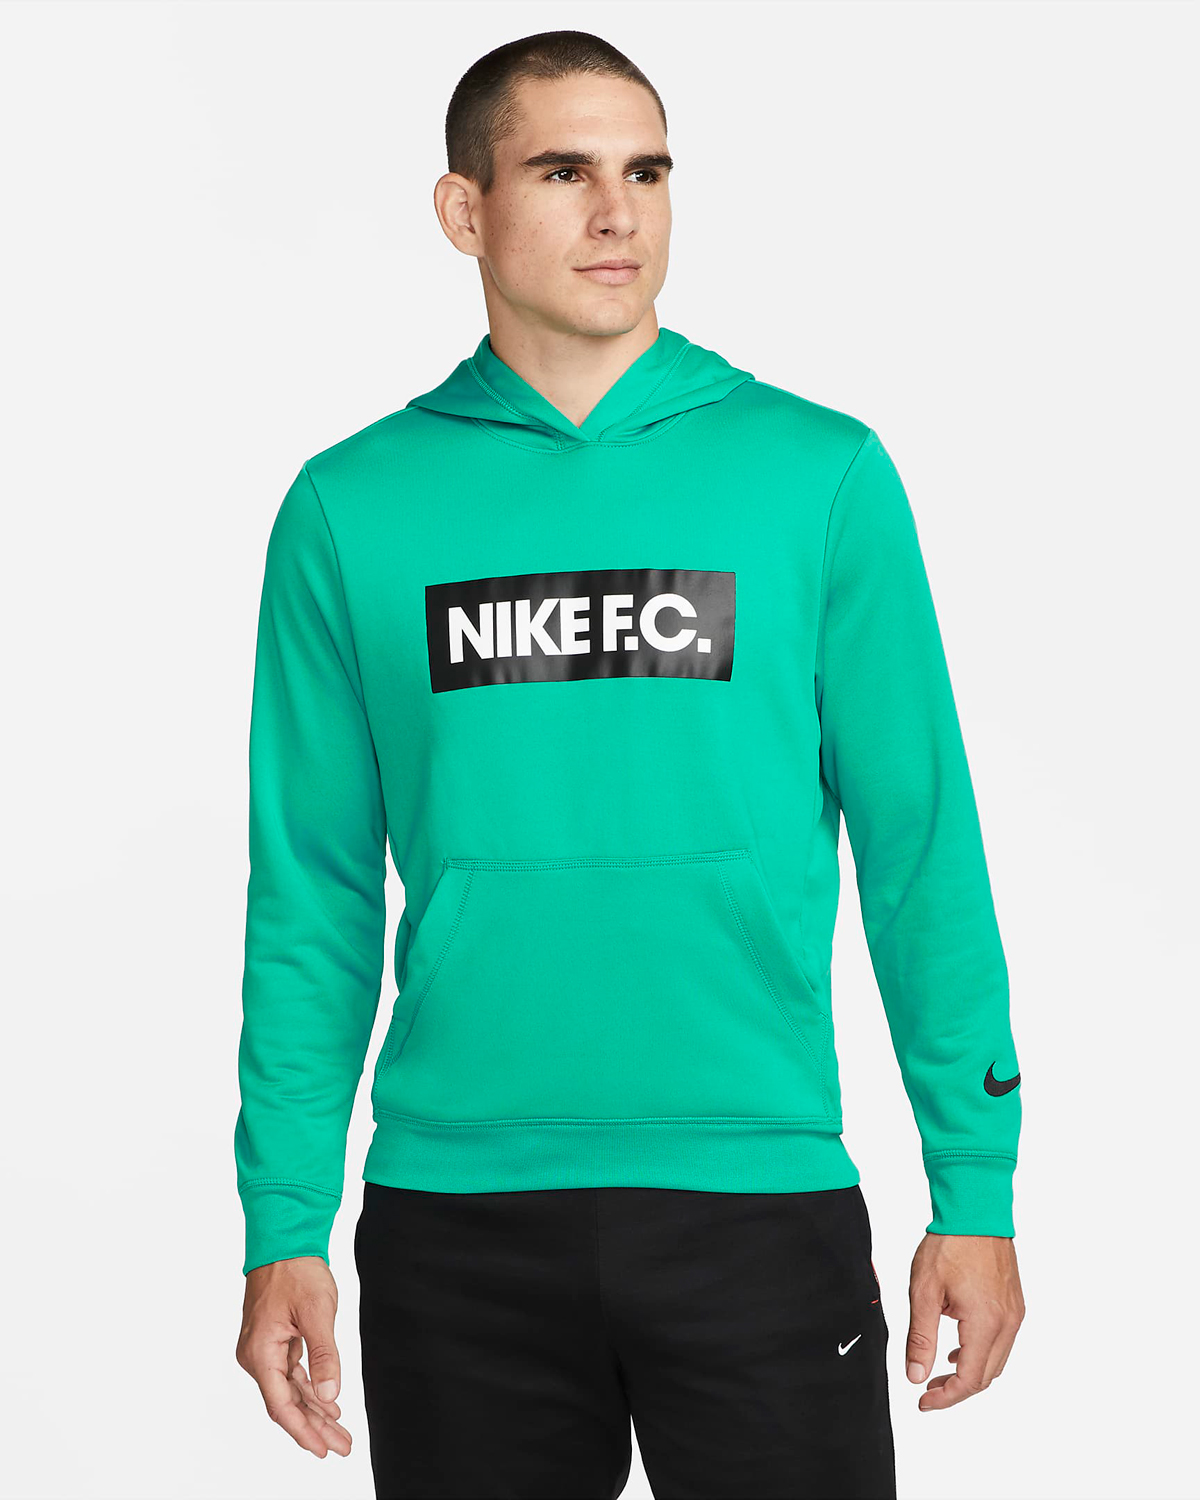 Nike-FC-Hoodie-Neptune-Green